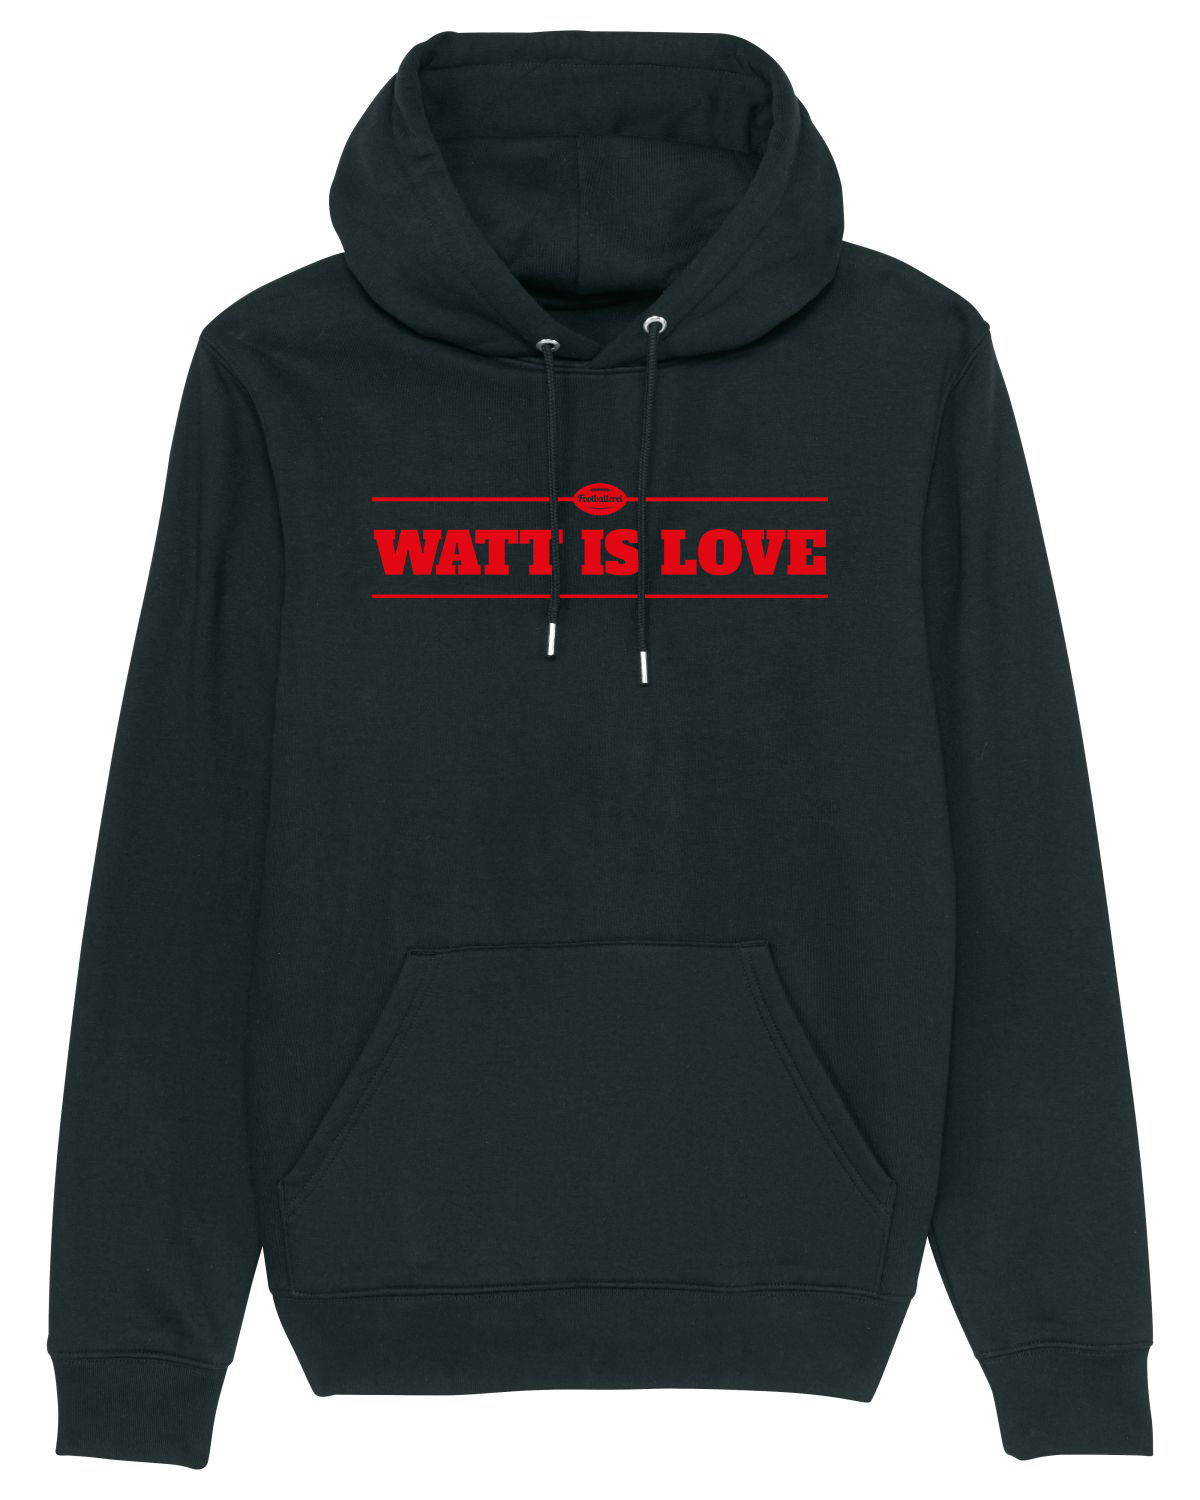 "Watt is Love" Hoodie